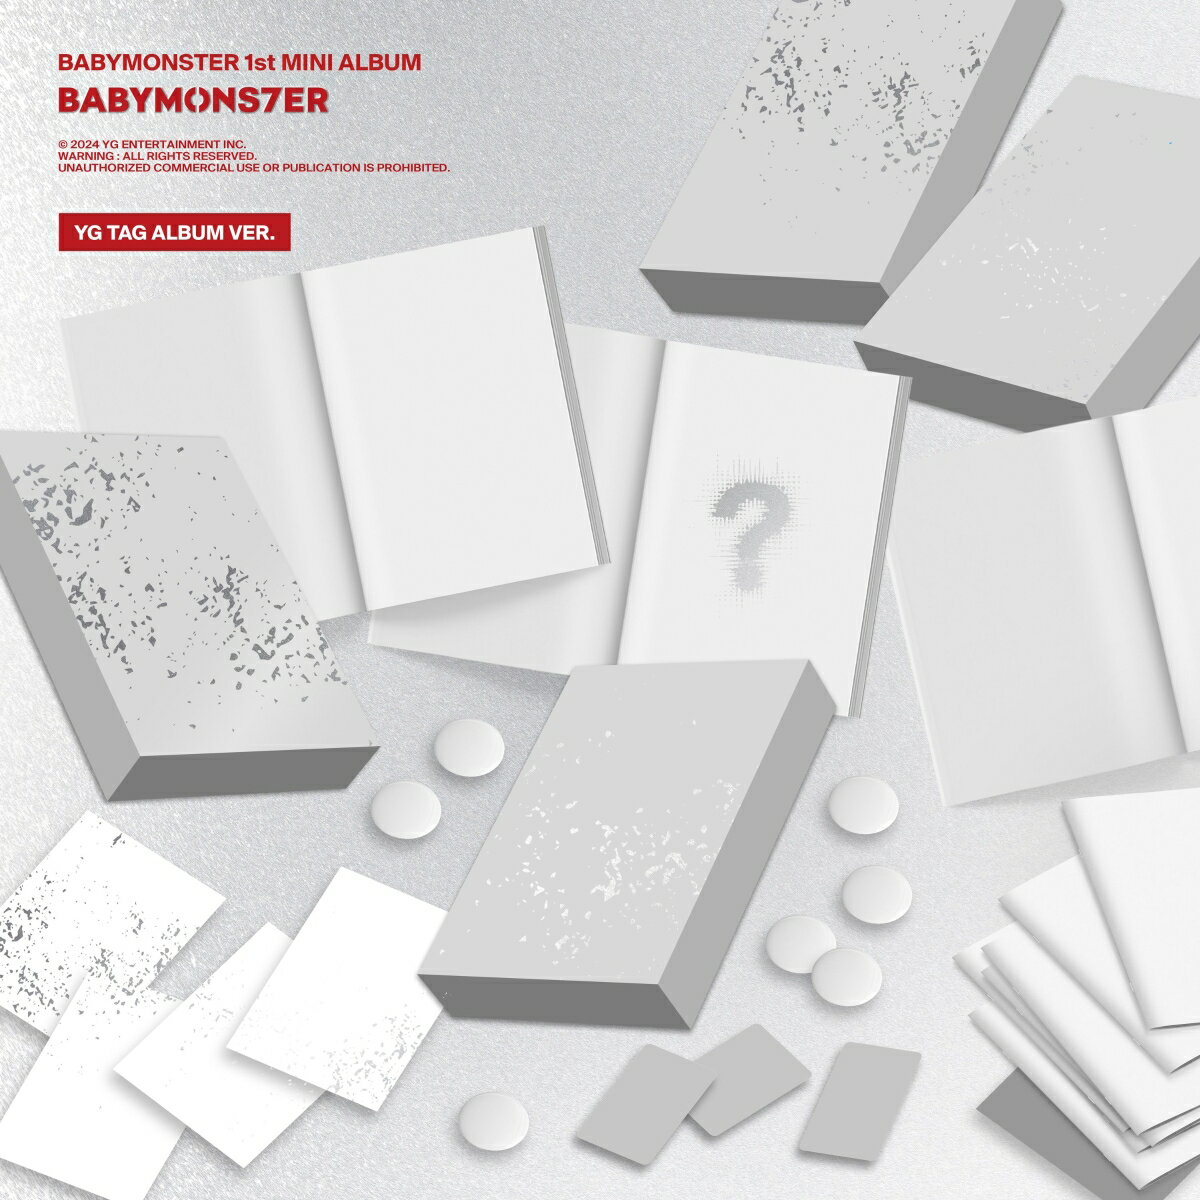 【楽天ブックス限定先着特典】【輸入盤】BABYMONSTER 1st MINI ALBUM [BABYMONS7ER] YG TAG ALBUM VER. (ASA VER.)(オリジナルL判ブロマイド(Type-B絵柄 / 全7種からランダムで1枚))